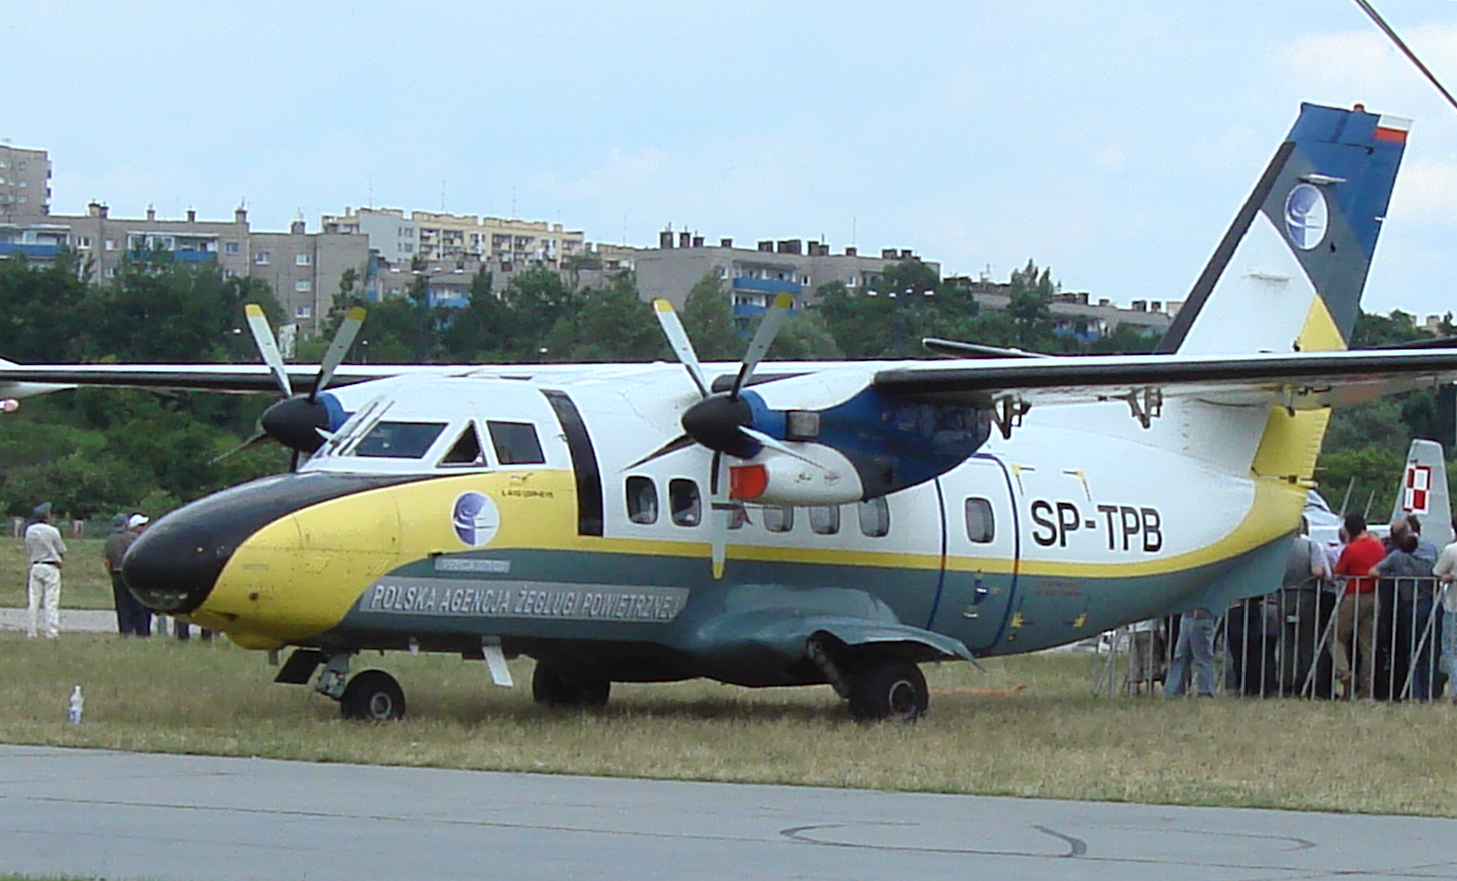 Samolot Papuga L-410 UVP E-15 Turbolet SP-TPB Polskiej Agencji Żeglugi Powietrznej. 2007 rok. Zdjęcie Karol Placha Hetman